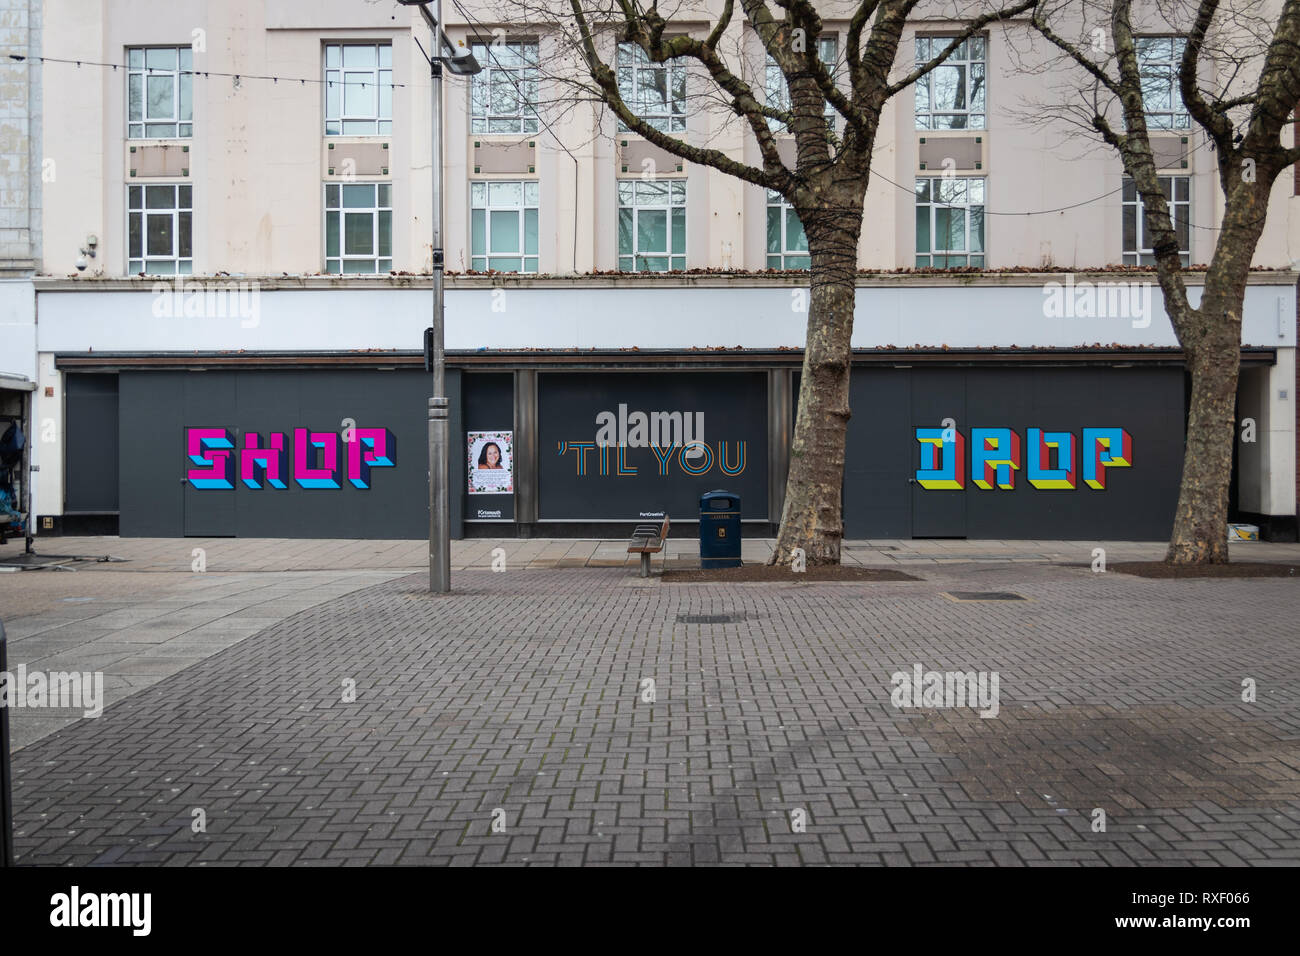 Sop till you drop artwork sulla parte anteriore del negozio chiuso, Portsmouth, Hampshire, Regno Unito Foto Stock